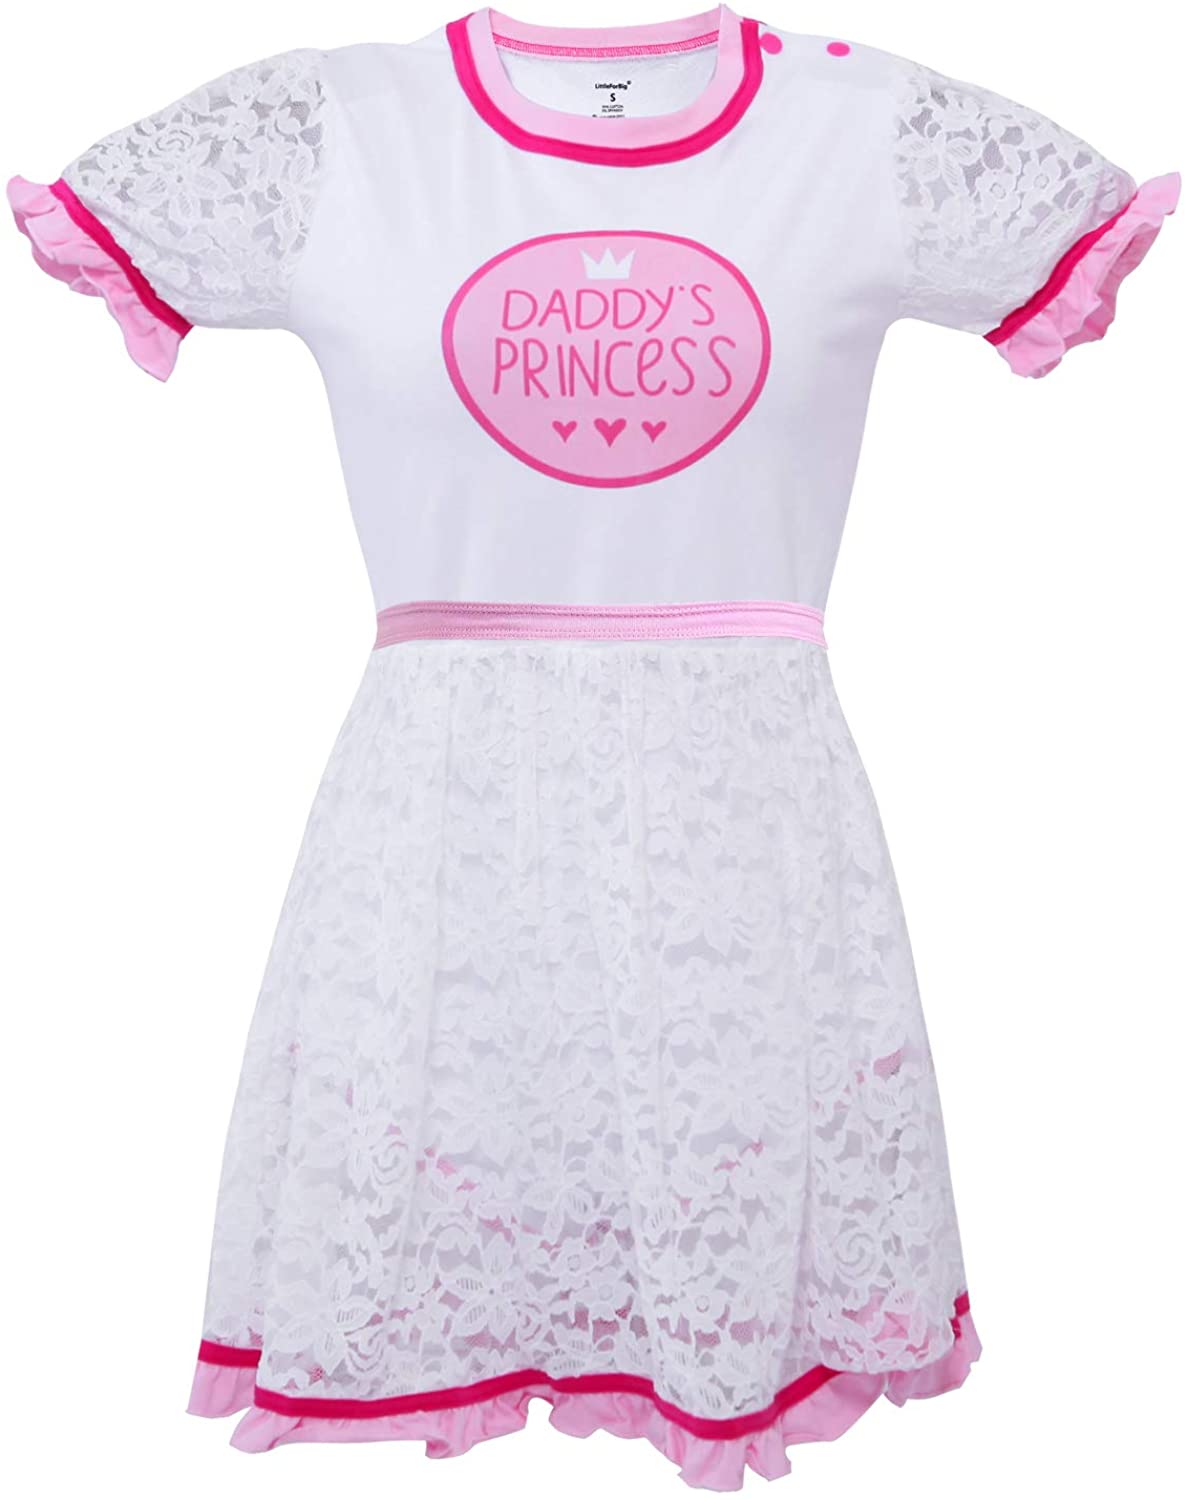 Daddy's Princess Lacy Dress 3